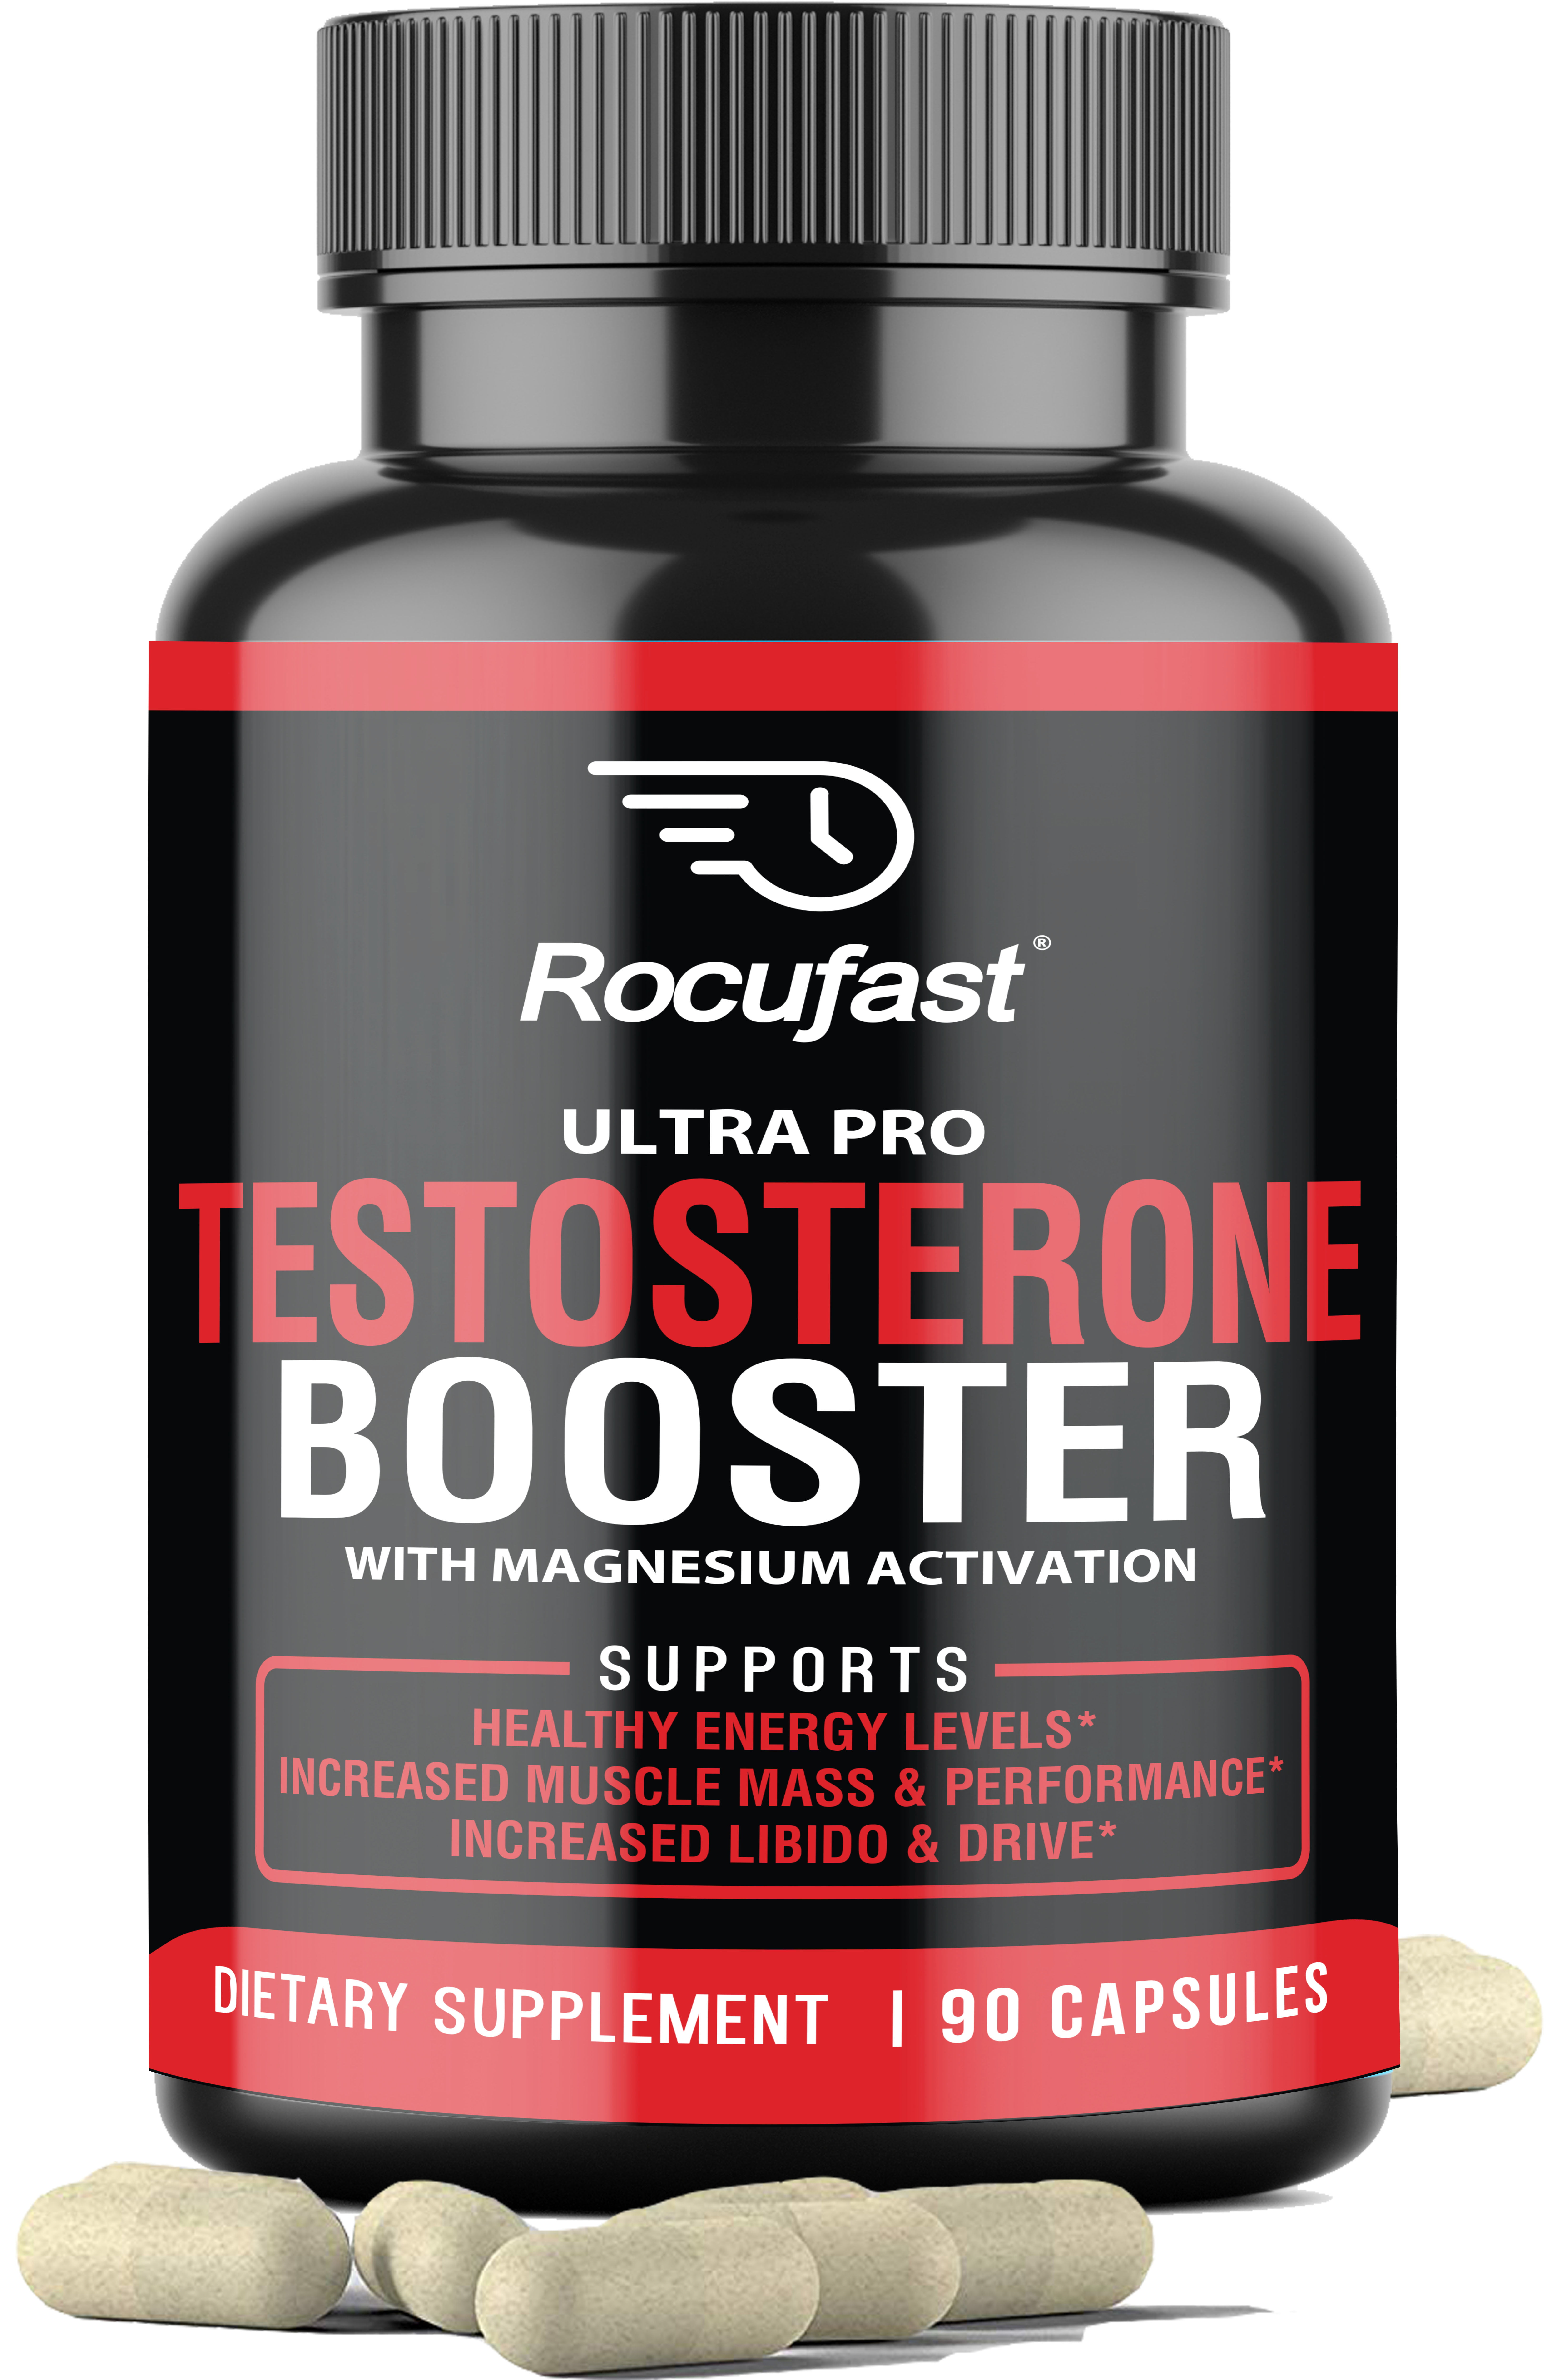 Testosterone supplements